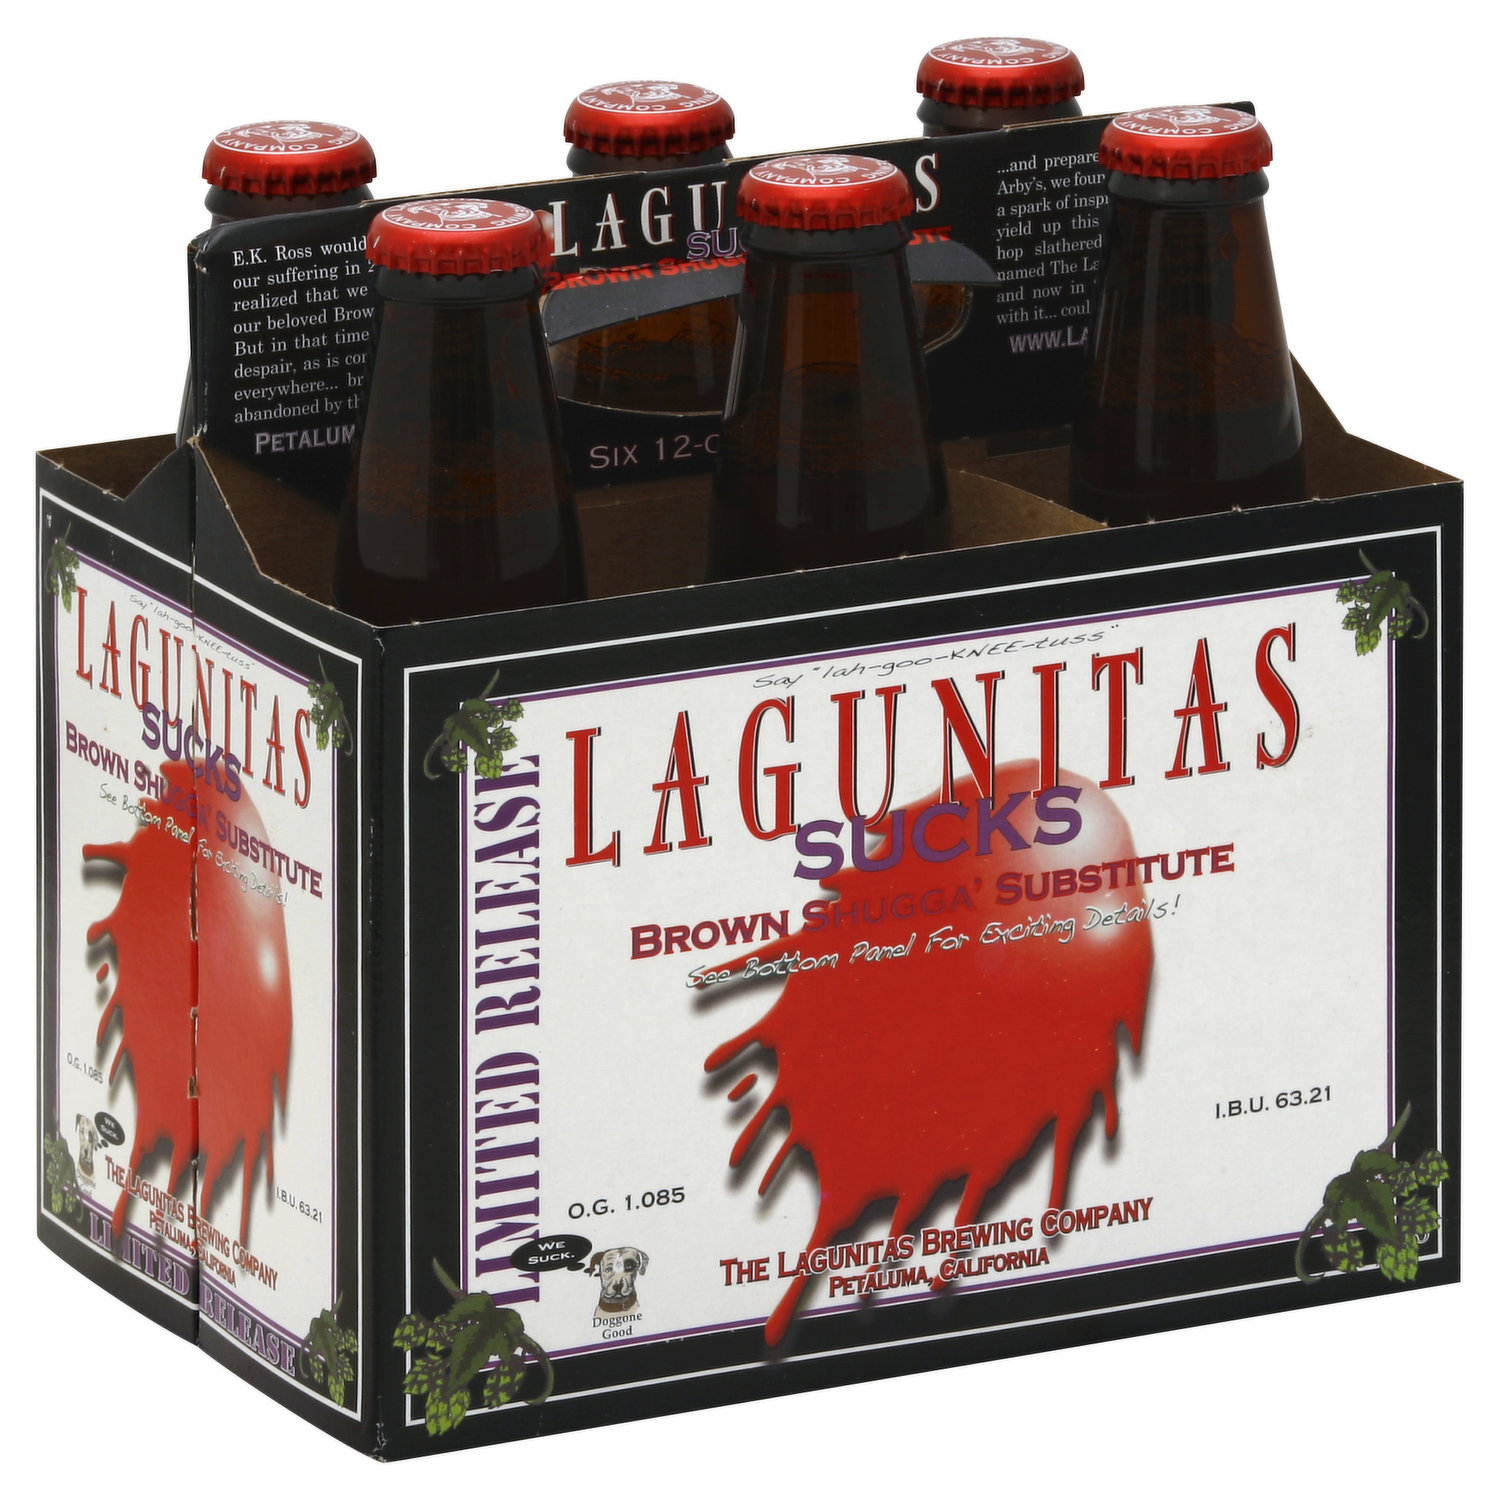 Lagunitas Ale, Brown Shugga\' Sucks, 6 Each Limited Release, Substitute